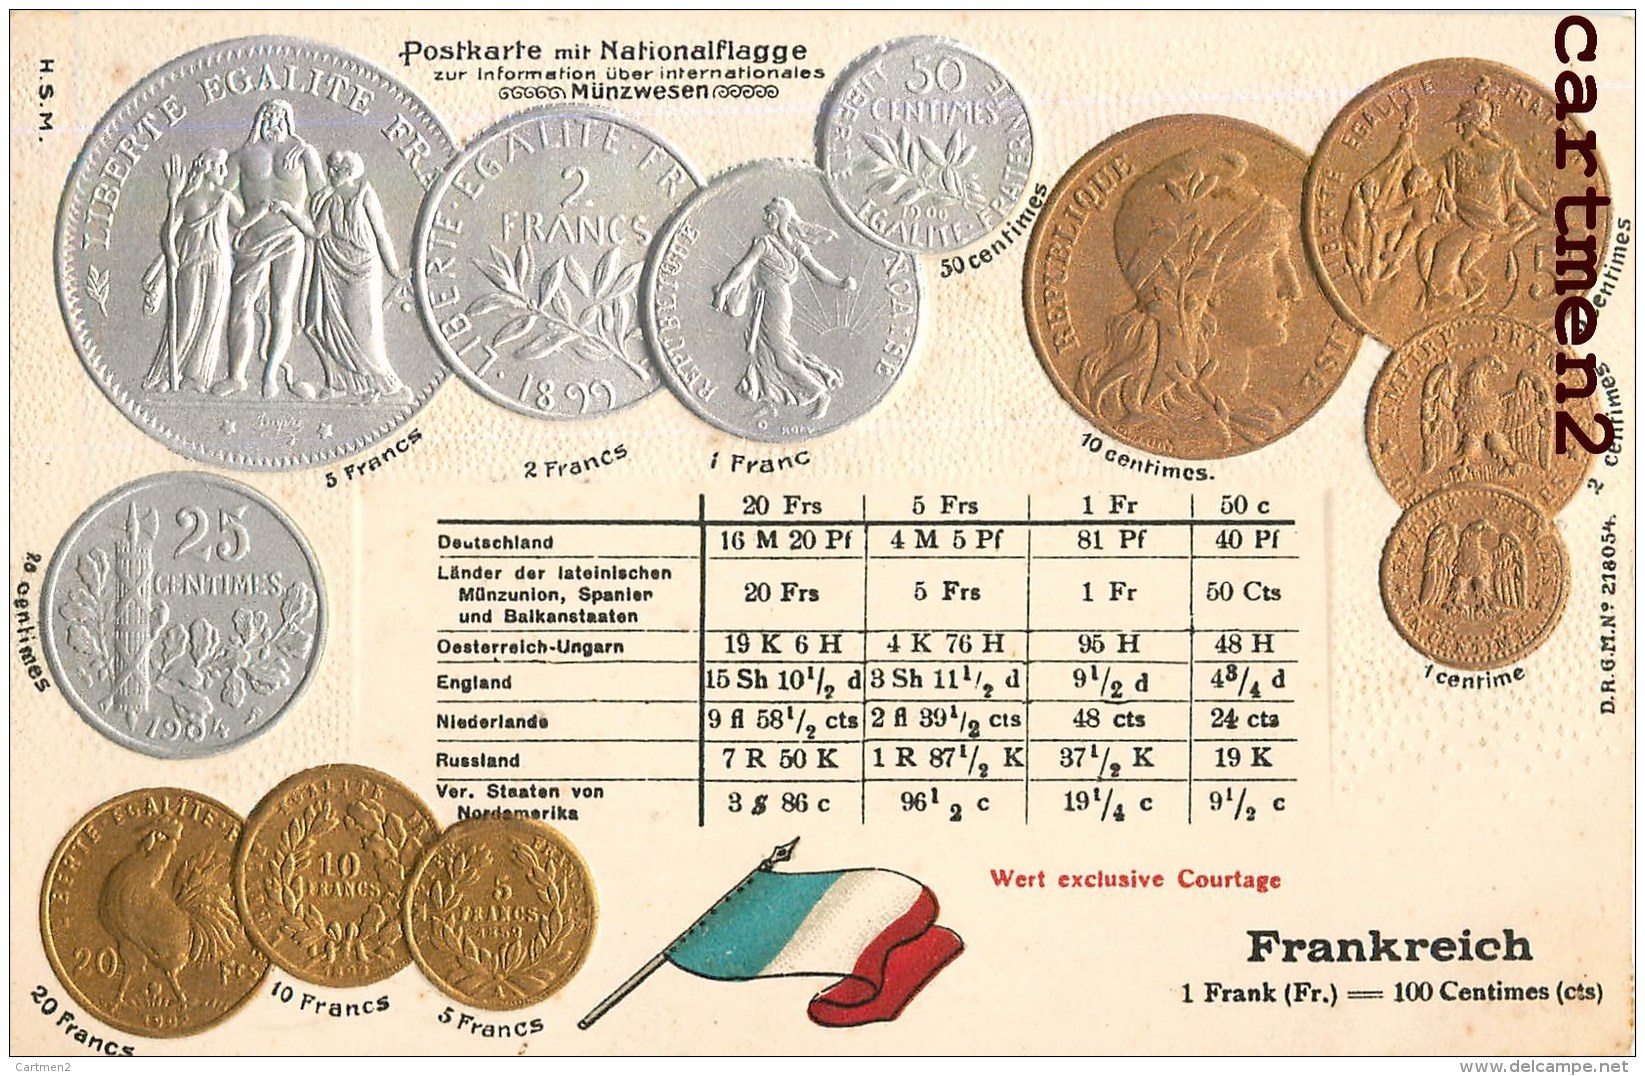 POSTKARTE MIT NATIONALFLAGGE LE FRANC FRANCAIS PIECEDE 5 FRANC EN ARGENT BOURSE GAUFREE EMBOSSED PATRIOTISME - Monnaies (représentations)